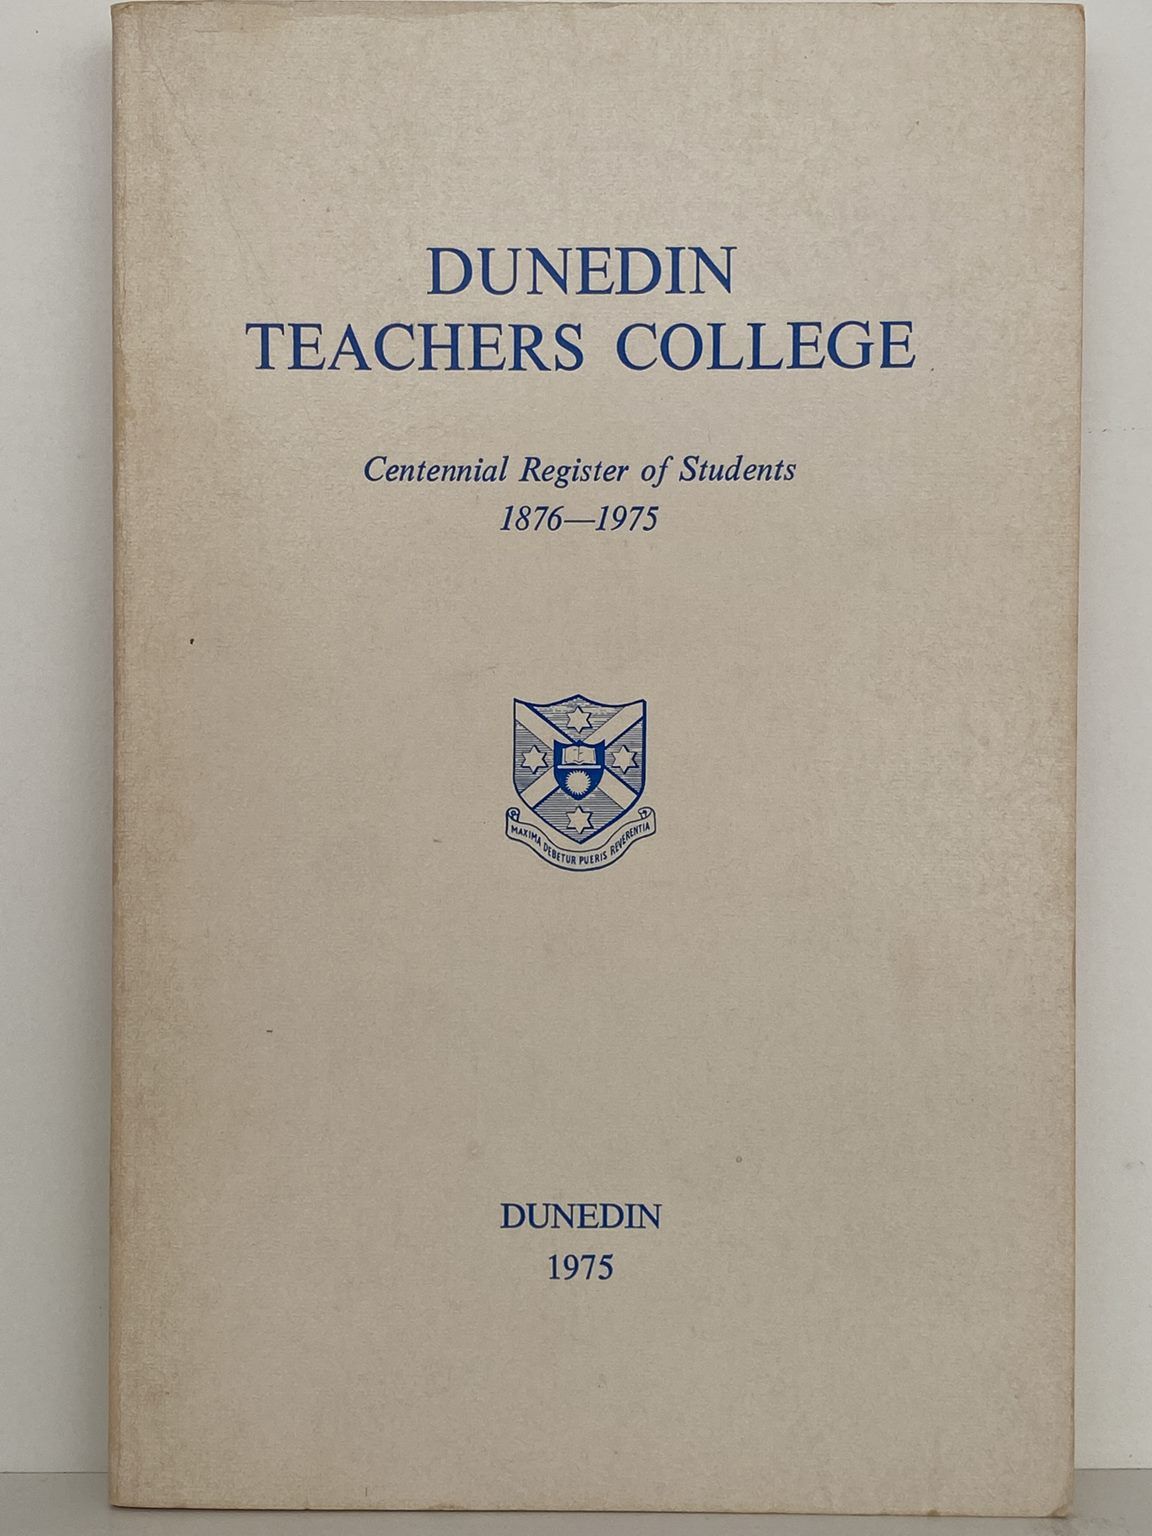 DUNEDIN TECHERS COLLEGE: Centennial Register of Students 1876 - 1975